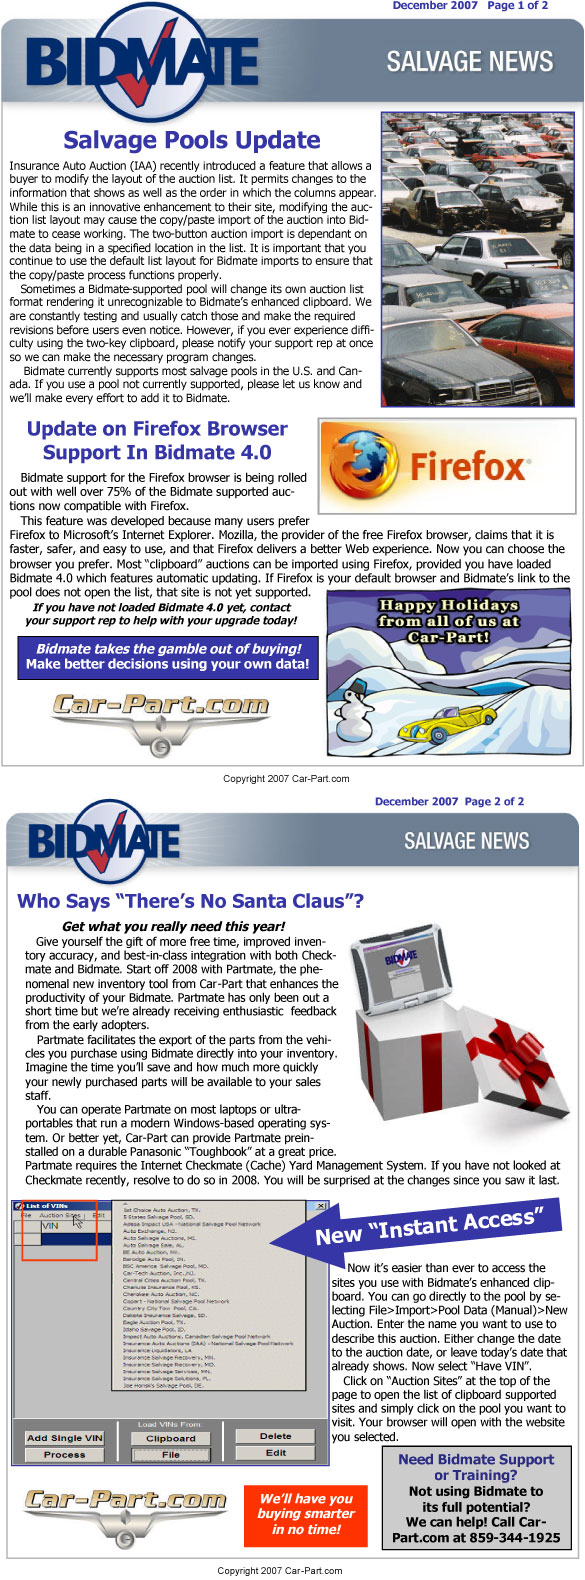 Bidmate Salvage News - December 2007